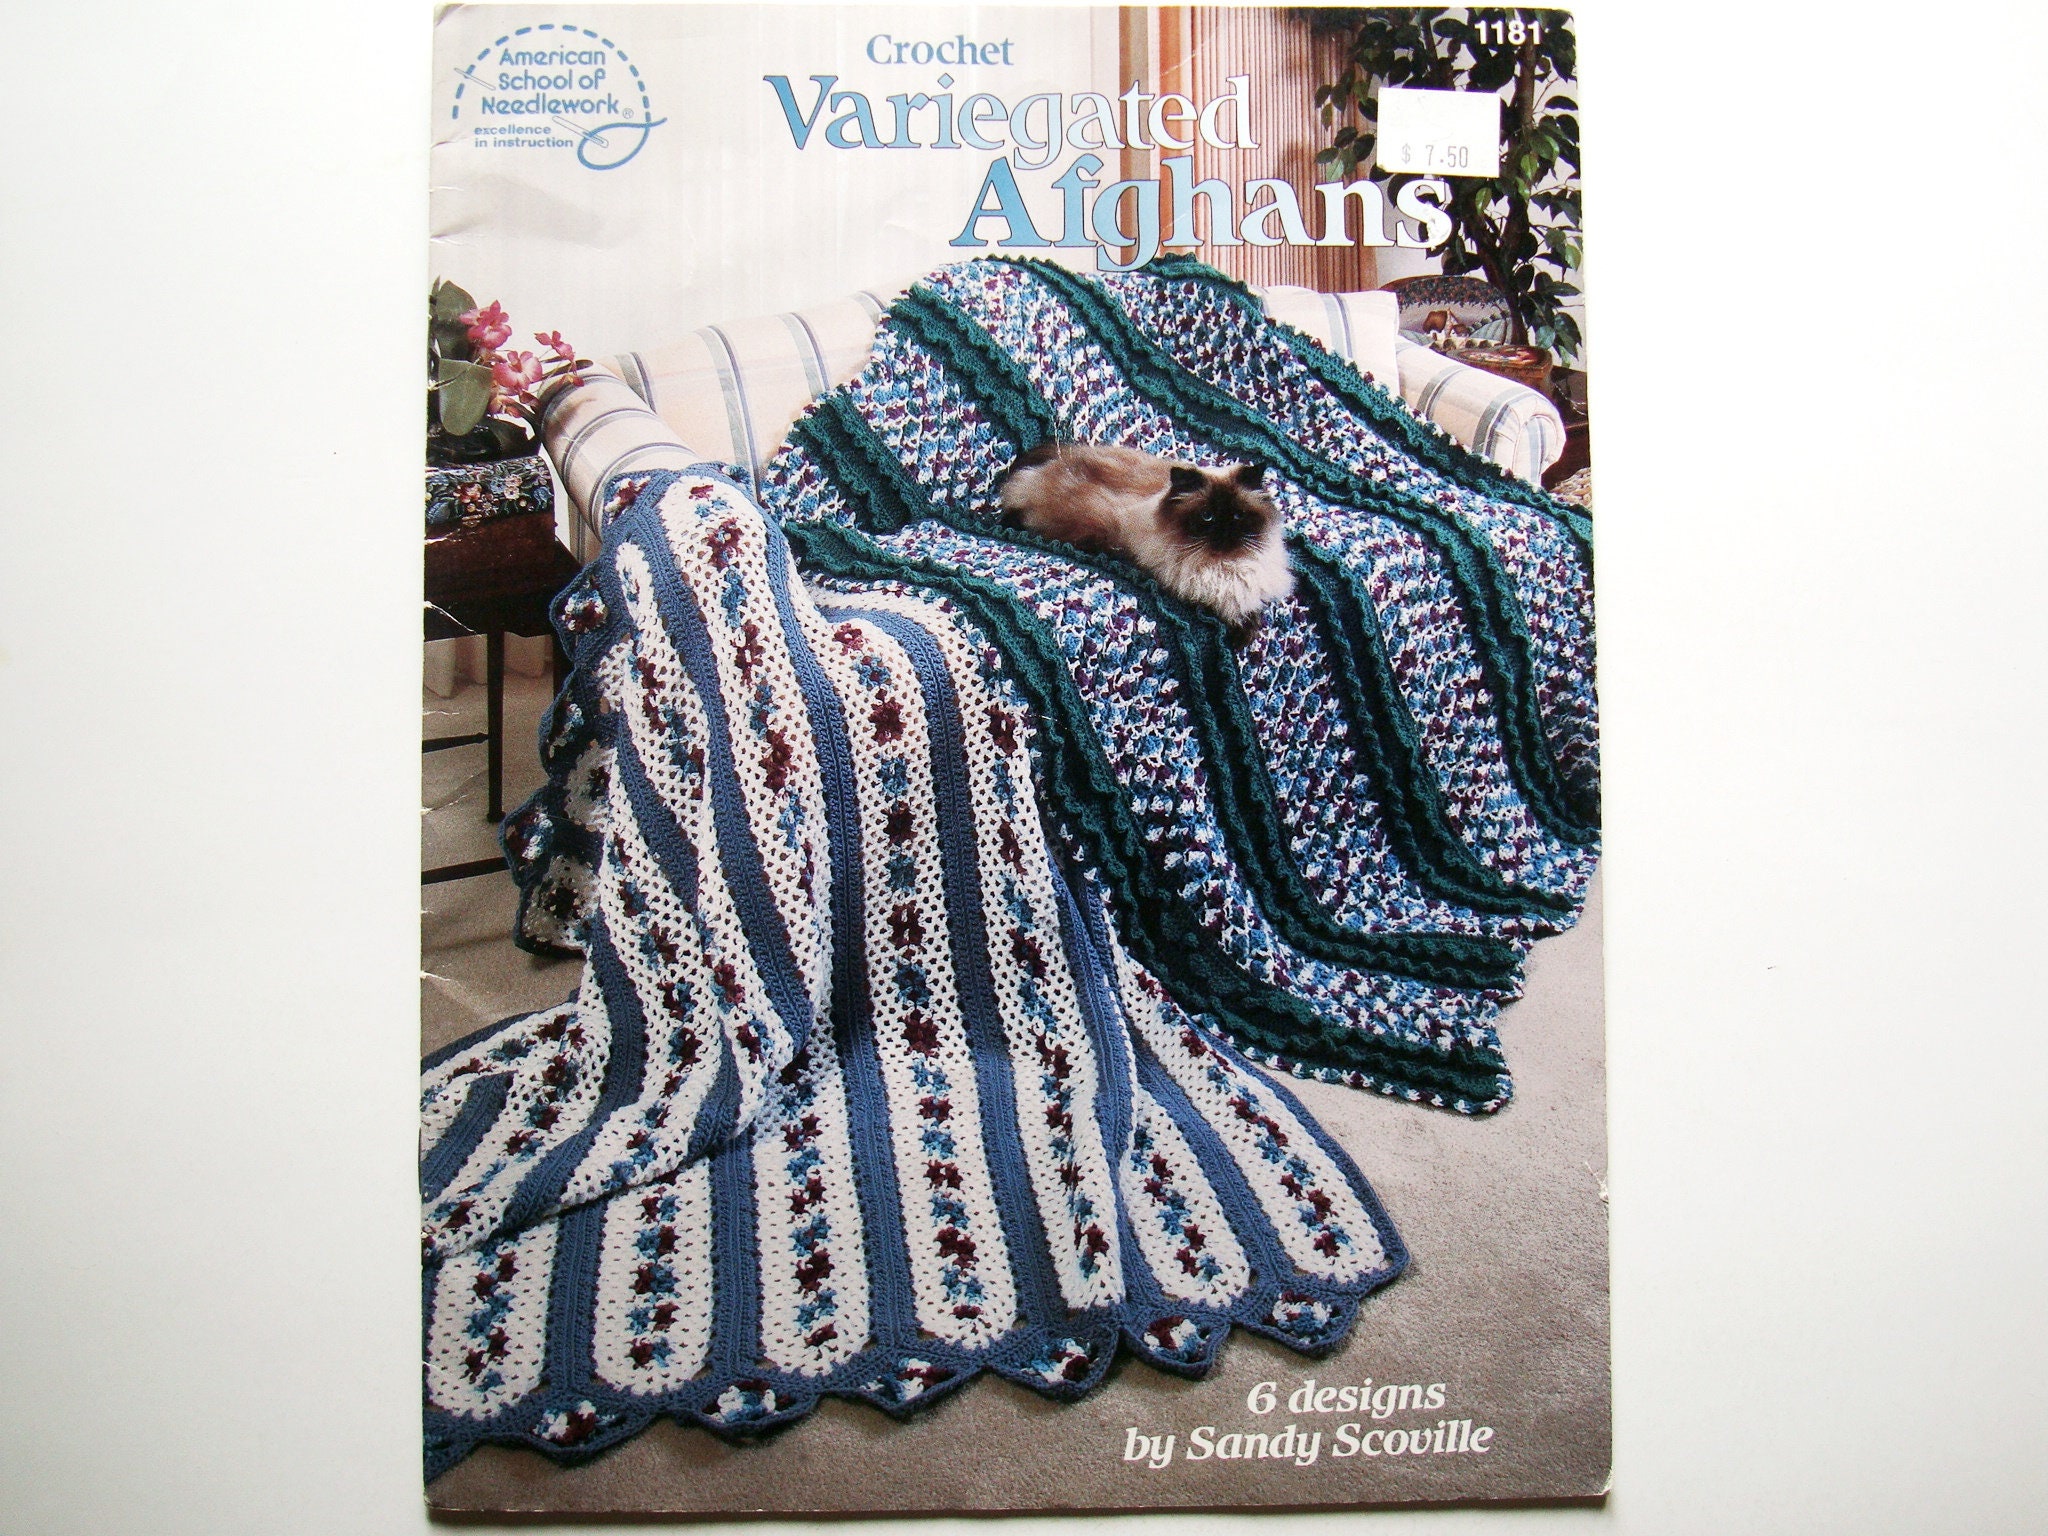 Crochet Afghan Pattern Books in HD PDF 